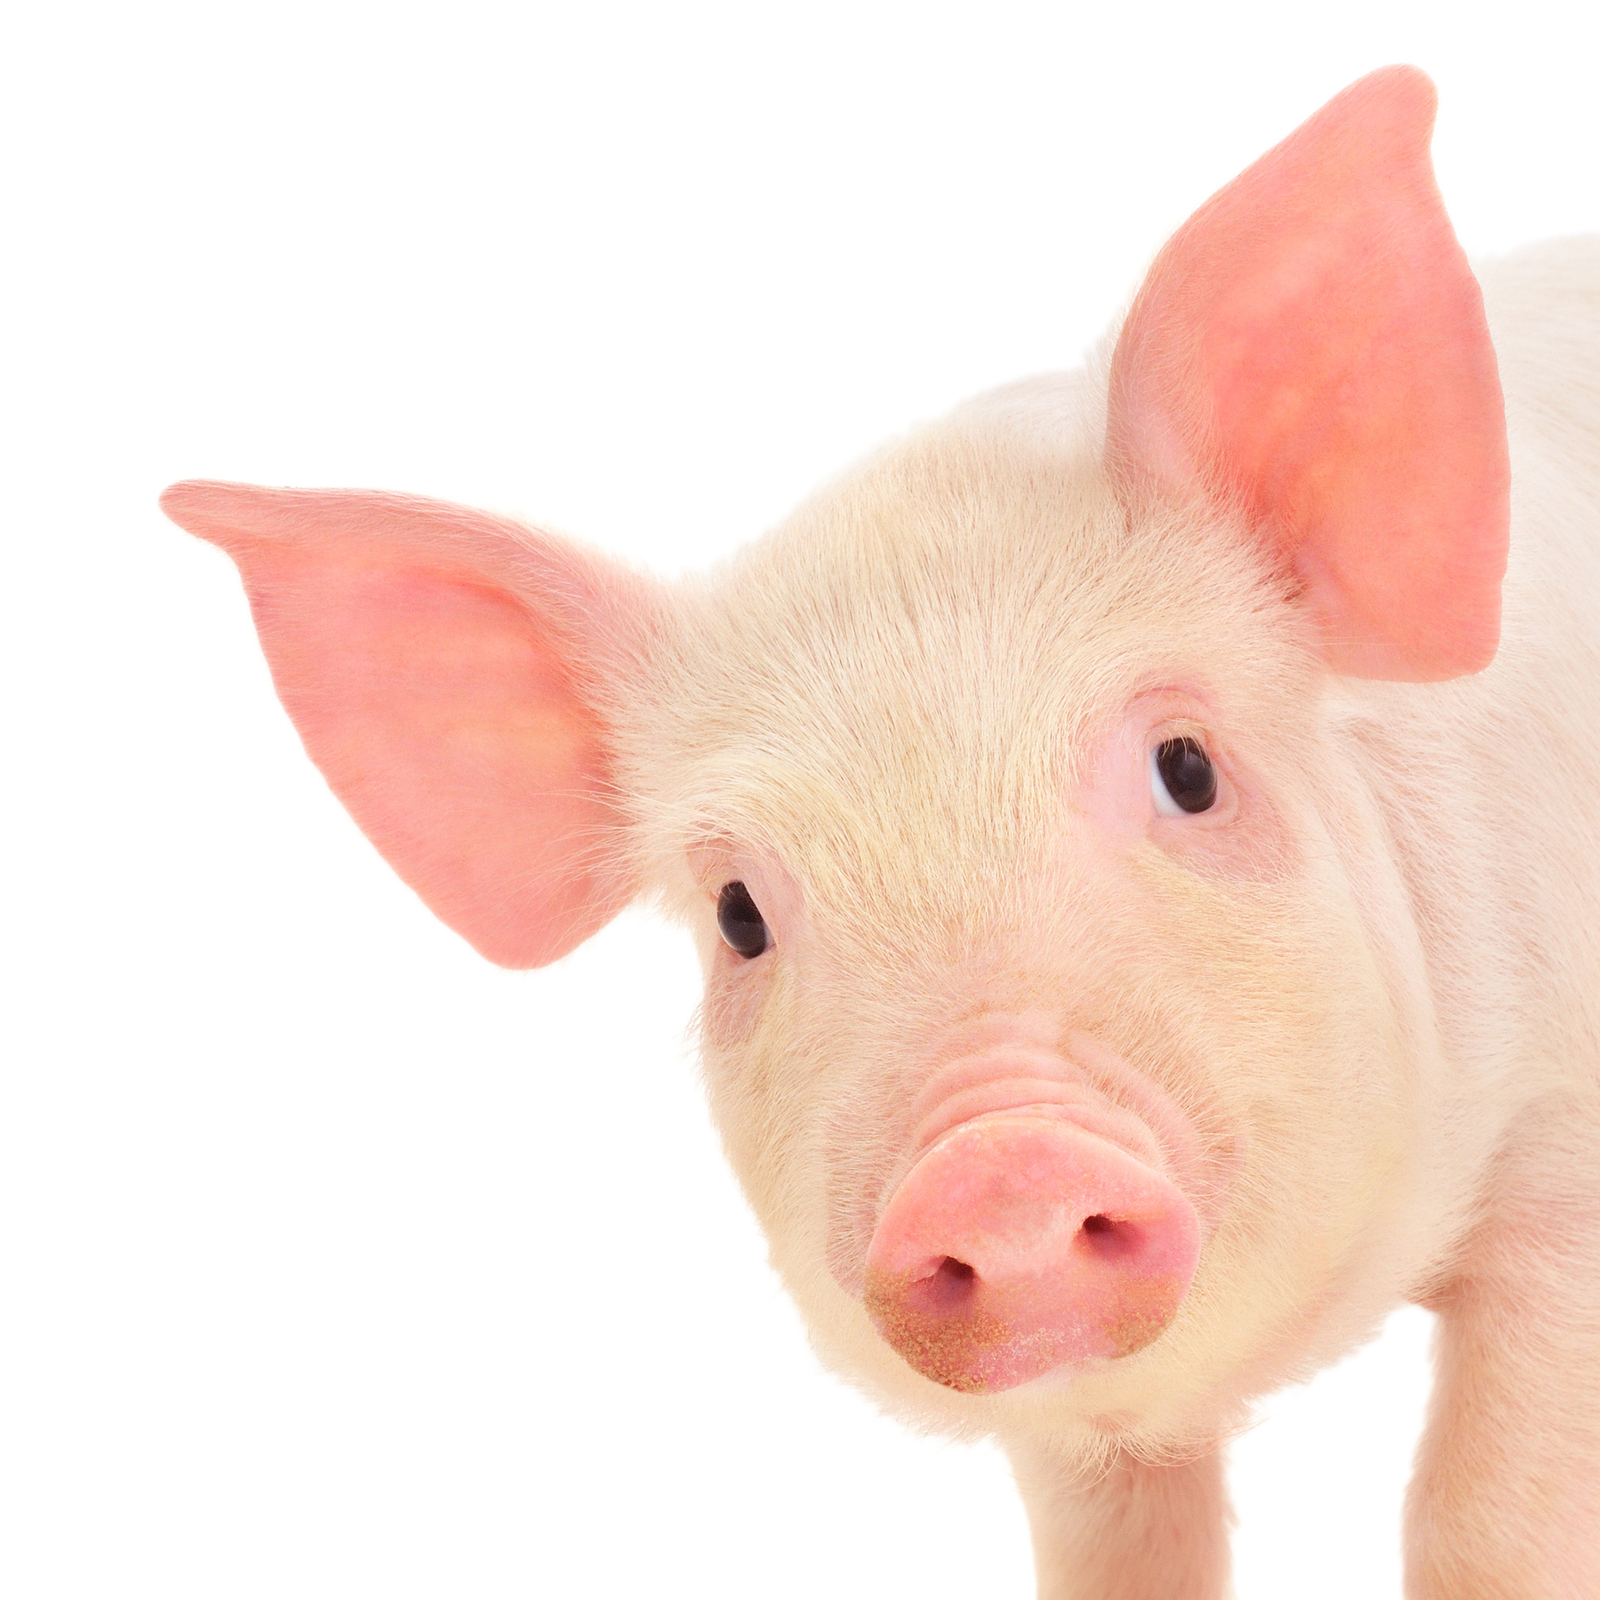 Schwein: Was ist die beste Strategie, um PCV2 zu behandeln?